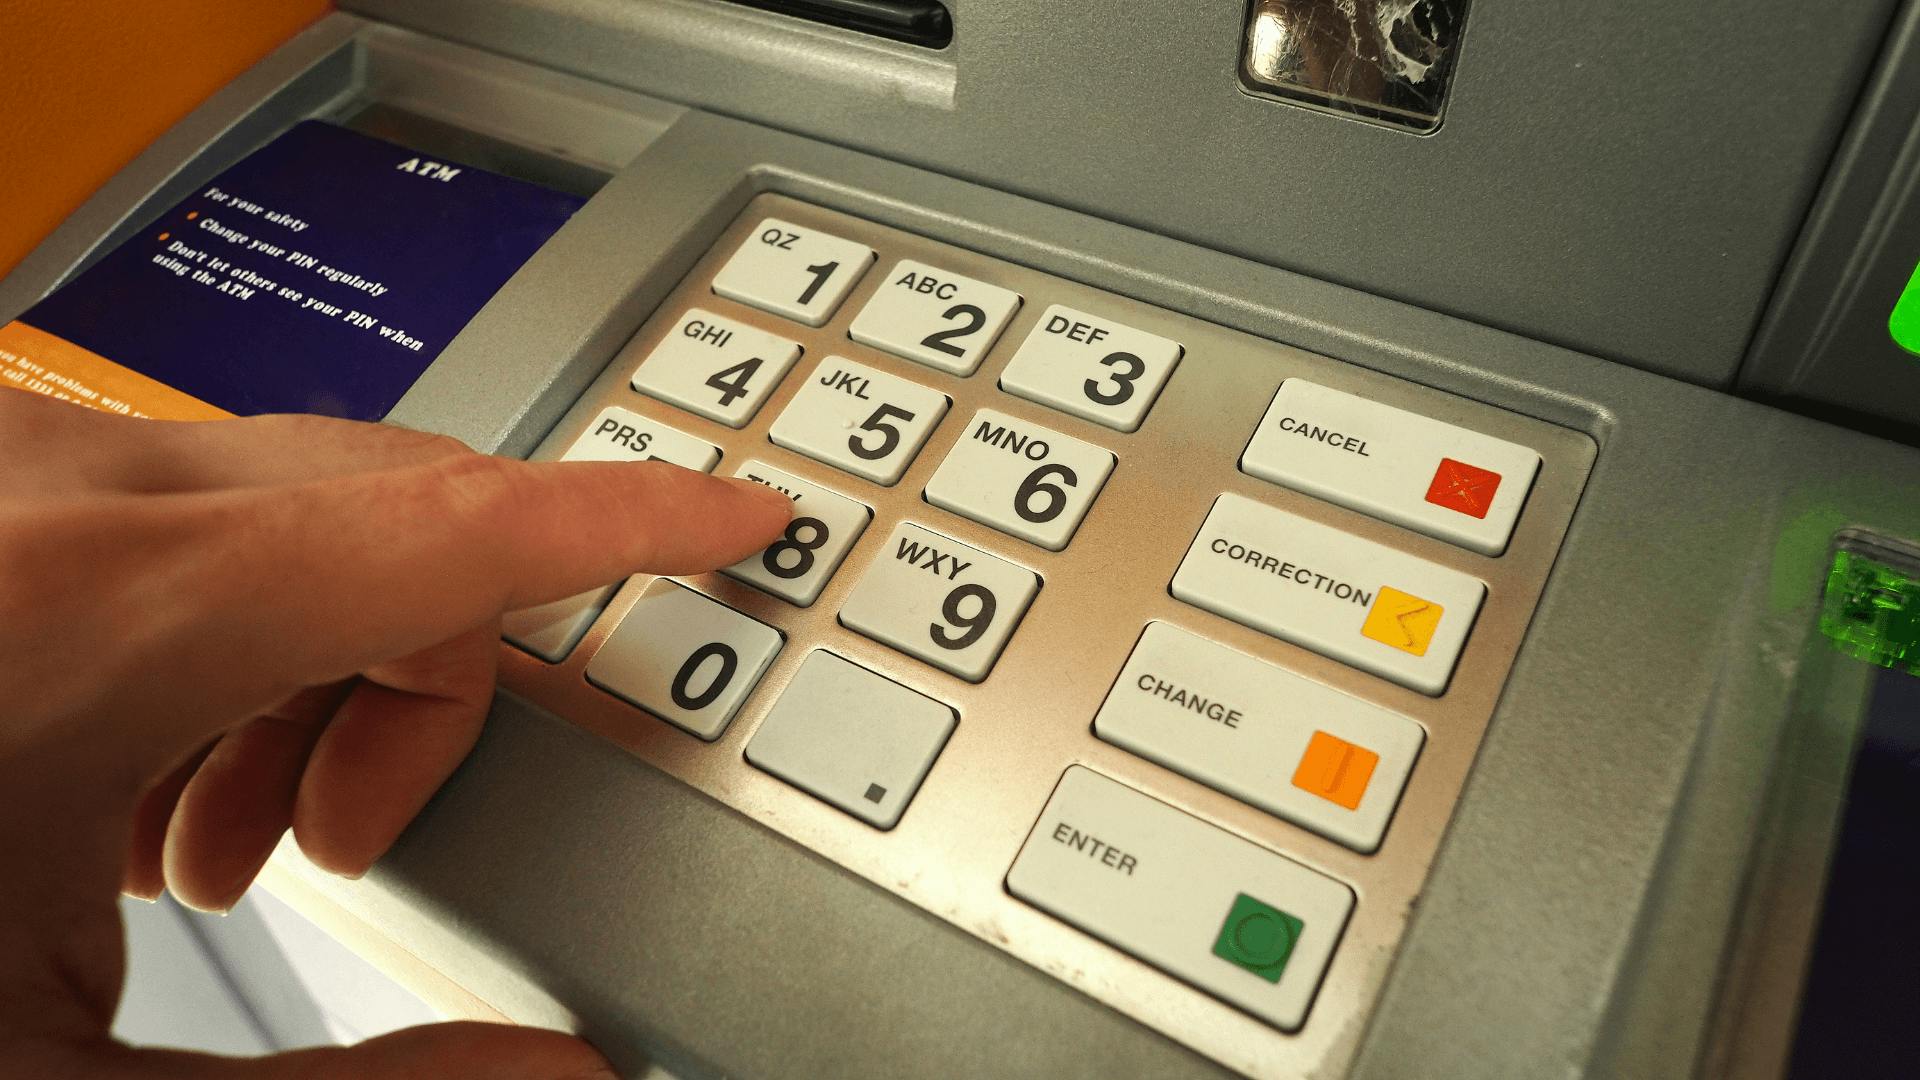 Getin Bank Wypłata Z Bankomatu Wypłata z bankomatu za granicą — ile kosztuje i jak nie tracić